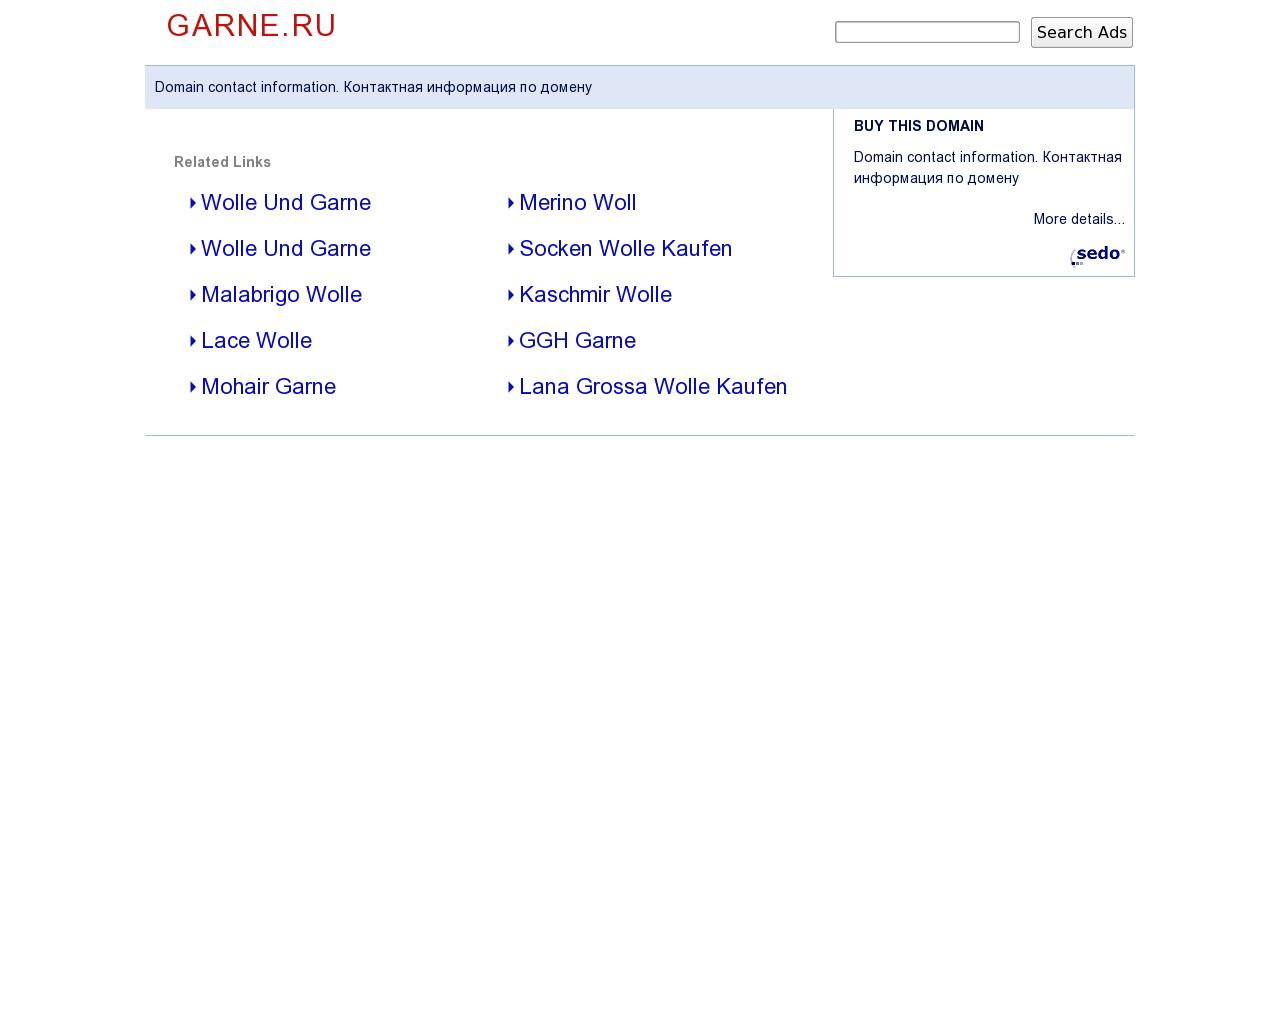 Изображение сайта garne.ru в разрешении 1280x1024